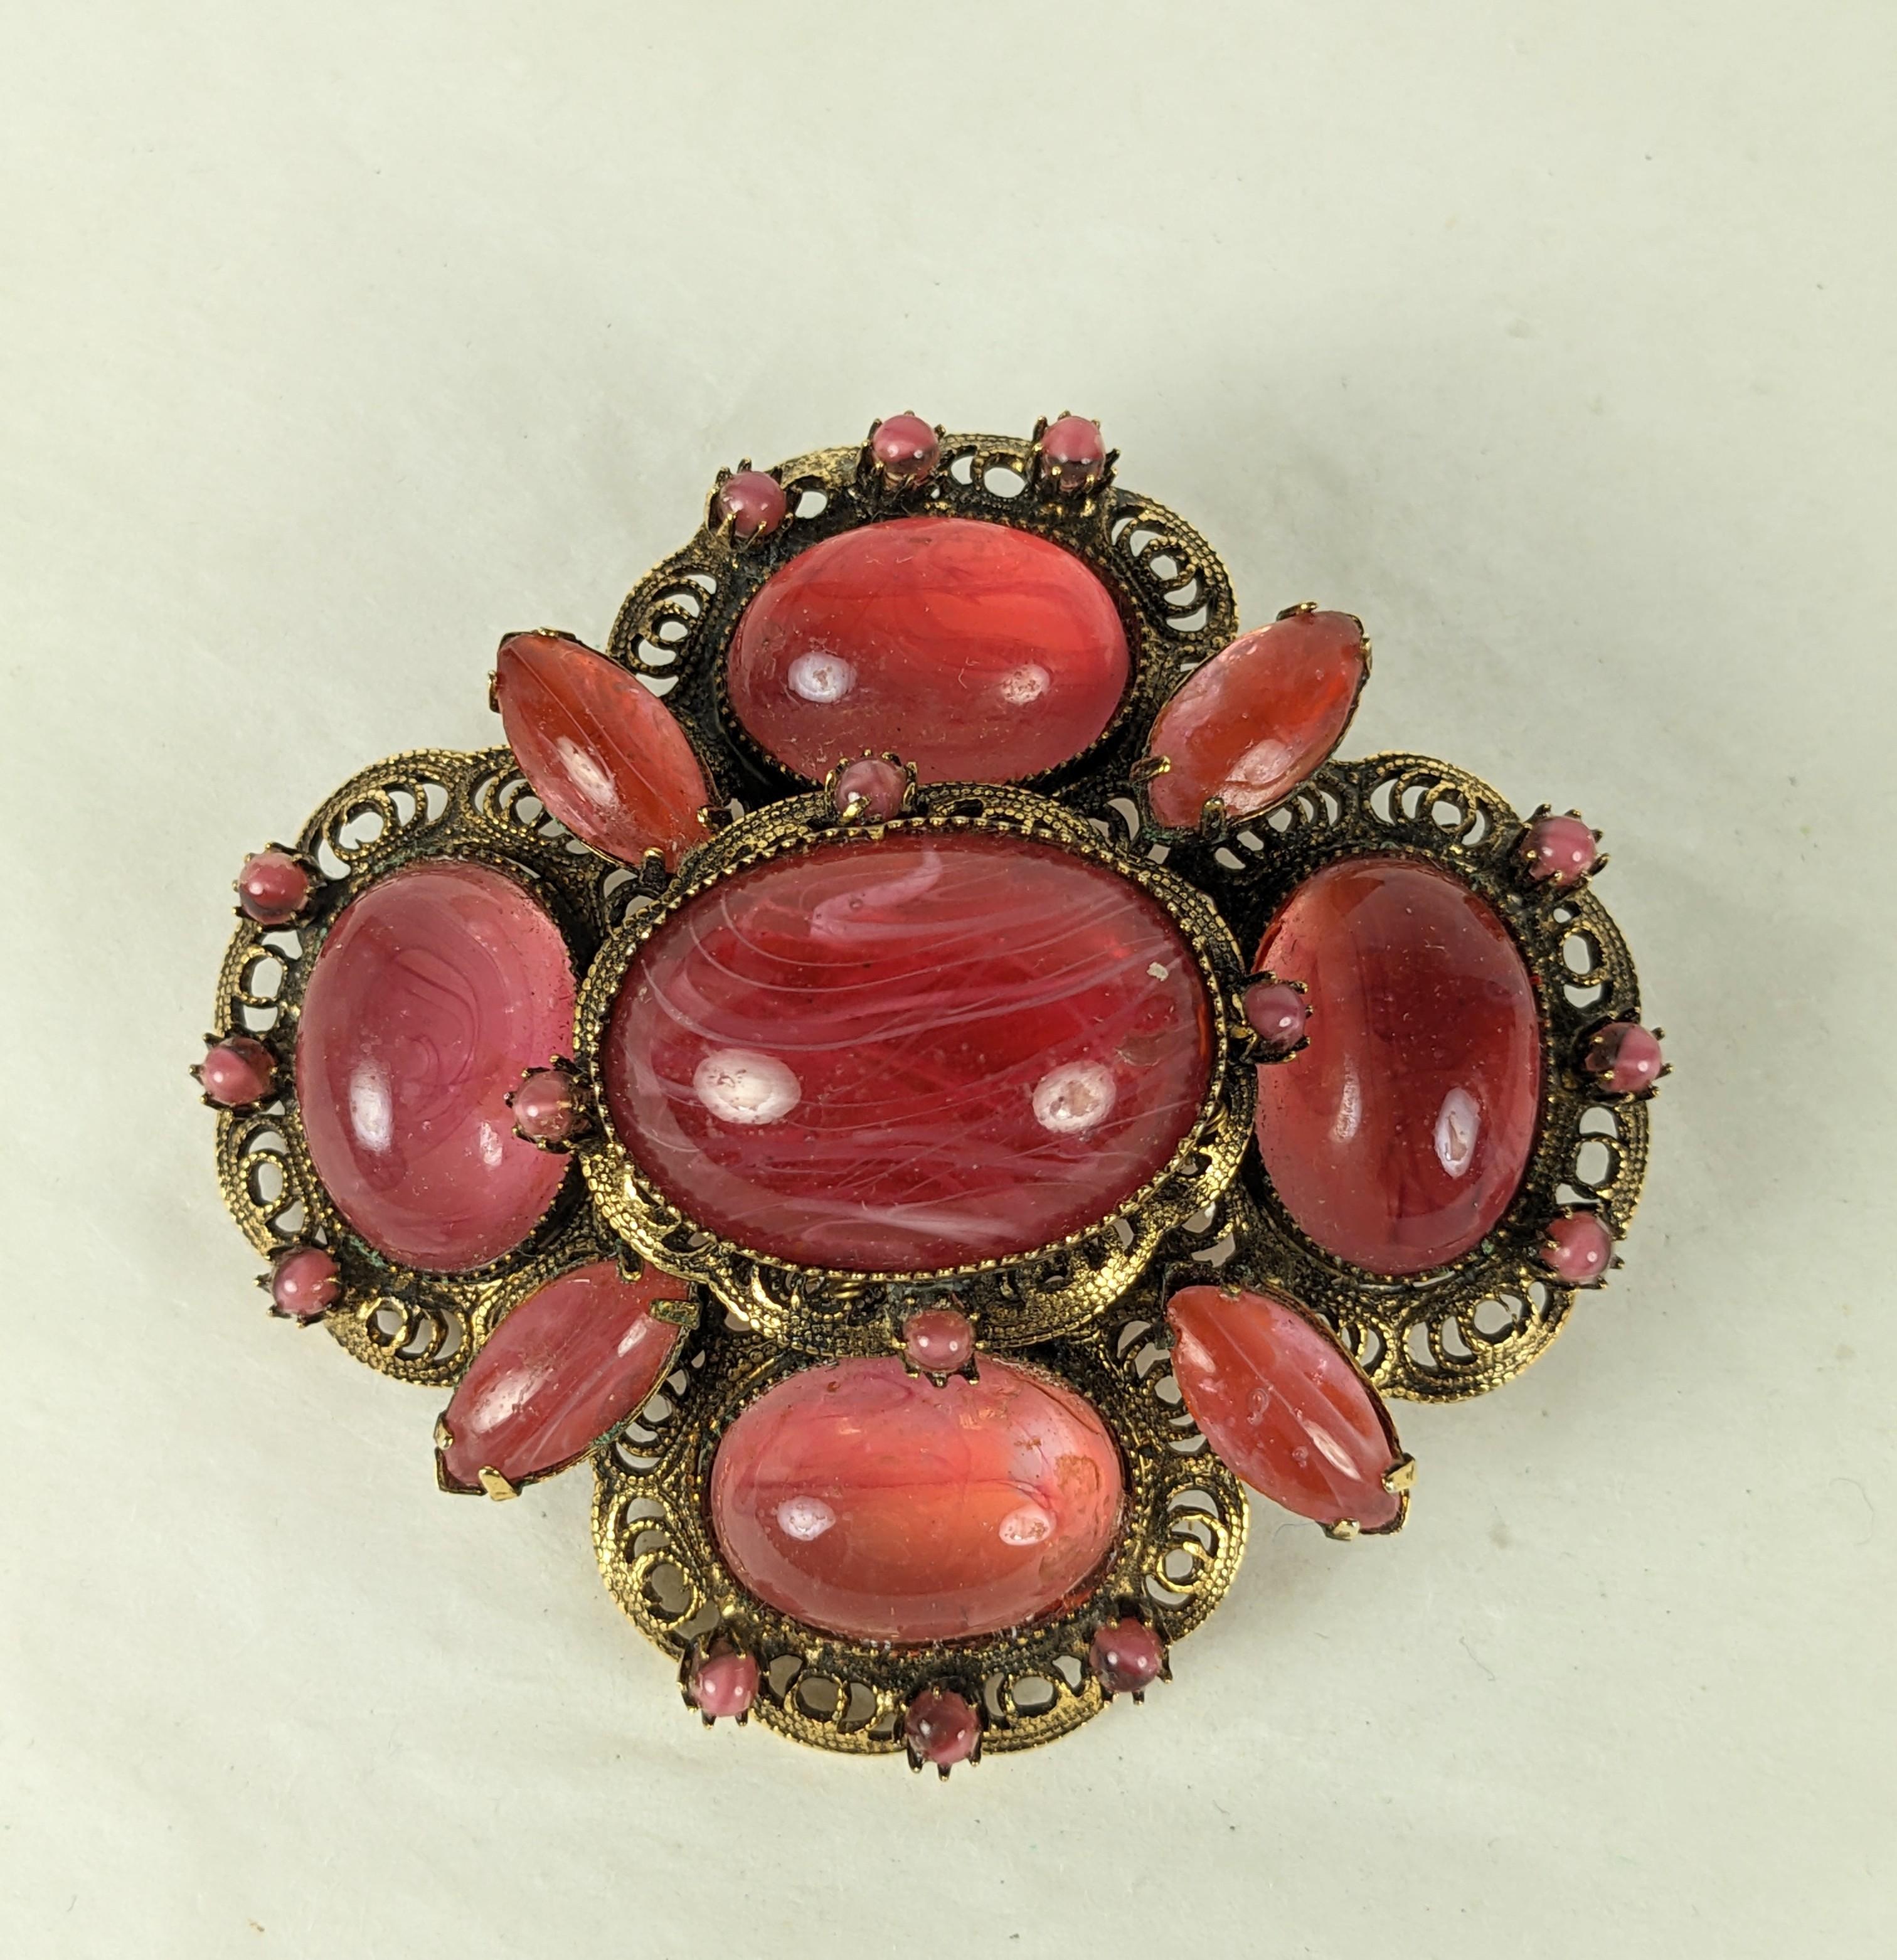 Remarquable broche en filigrane de Robert Jewell, datant des années 1950. Cabochons de quartz rose orangé sertis dans un métal filigrané antique. 2.5